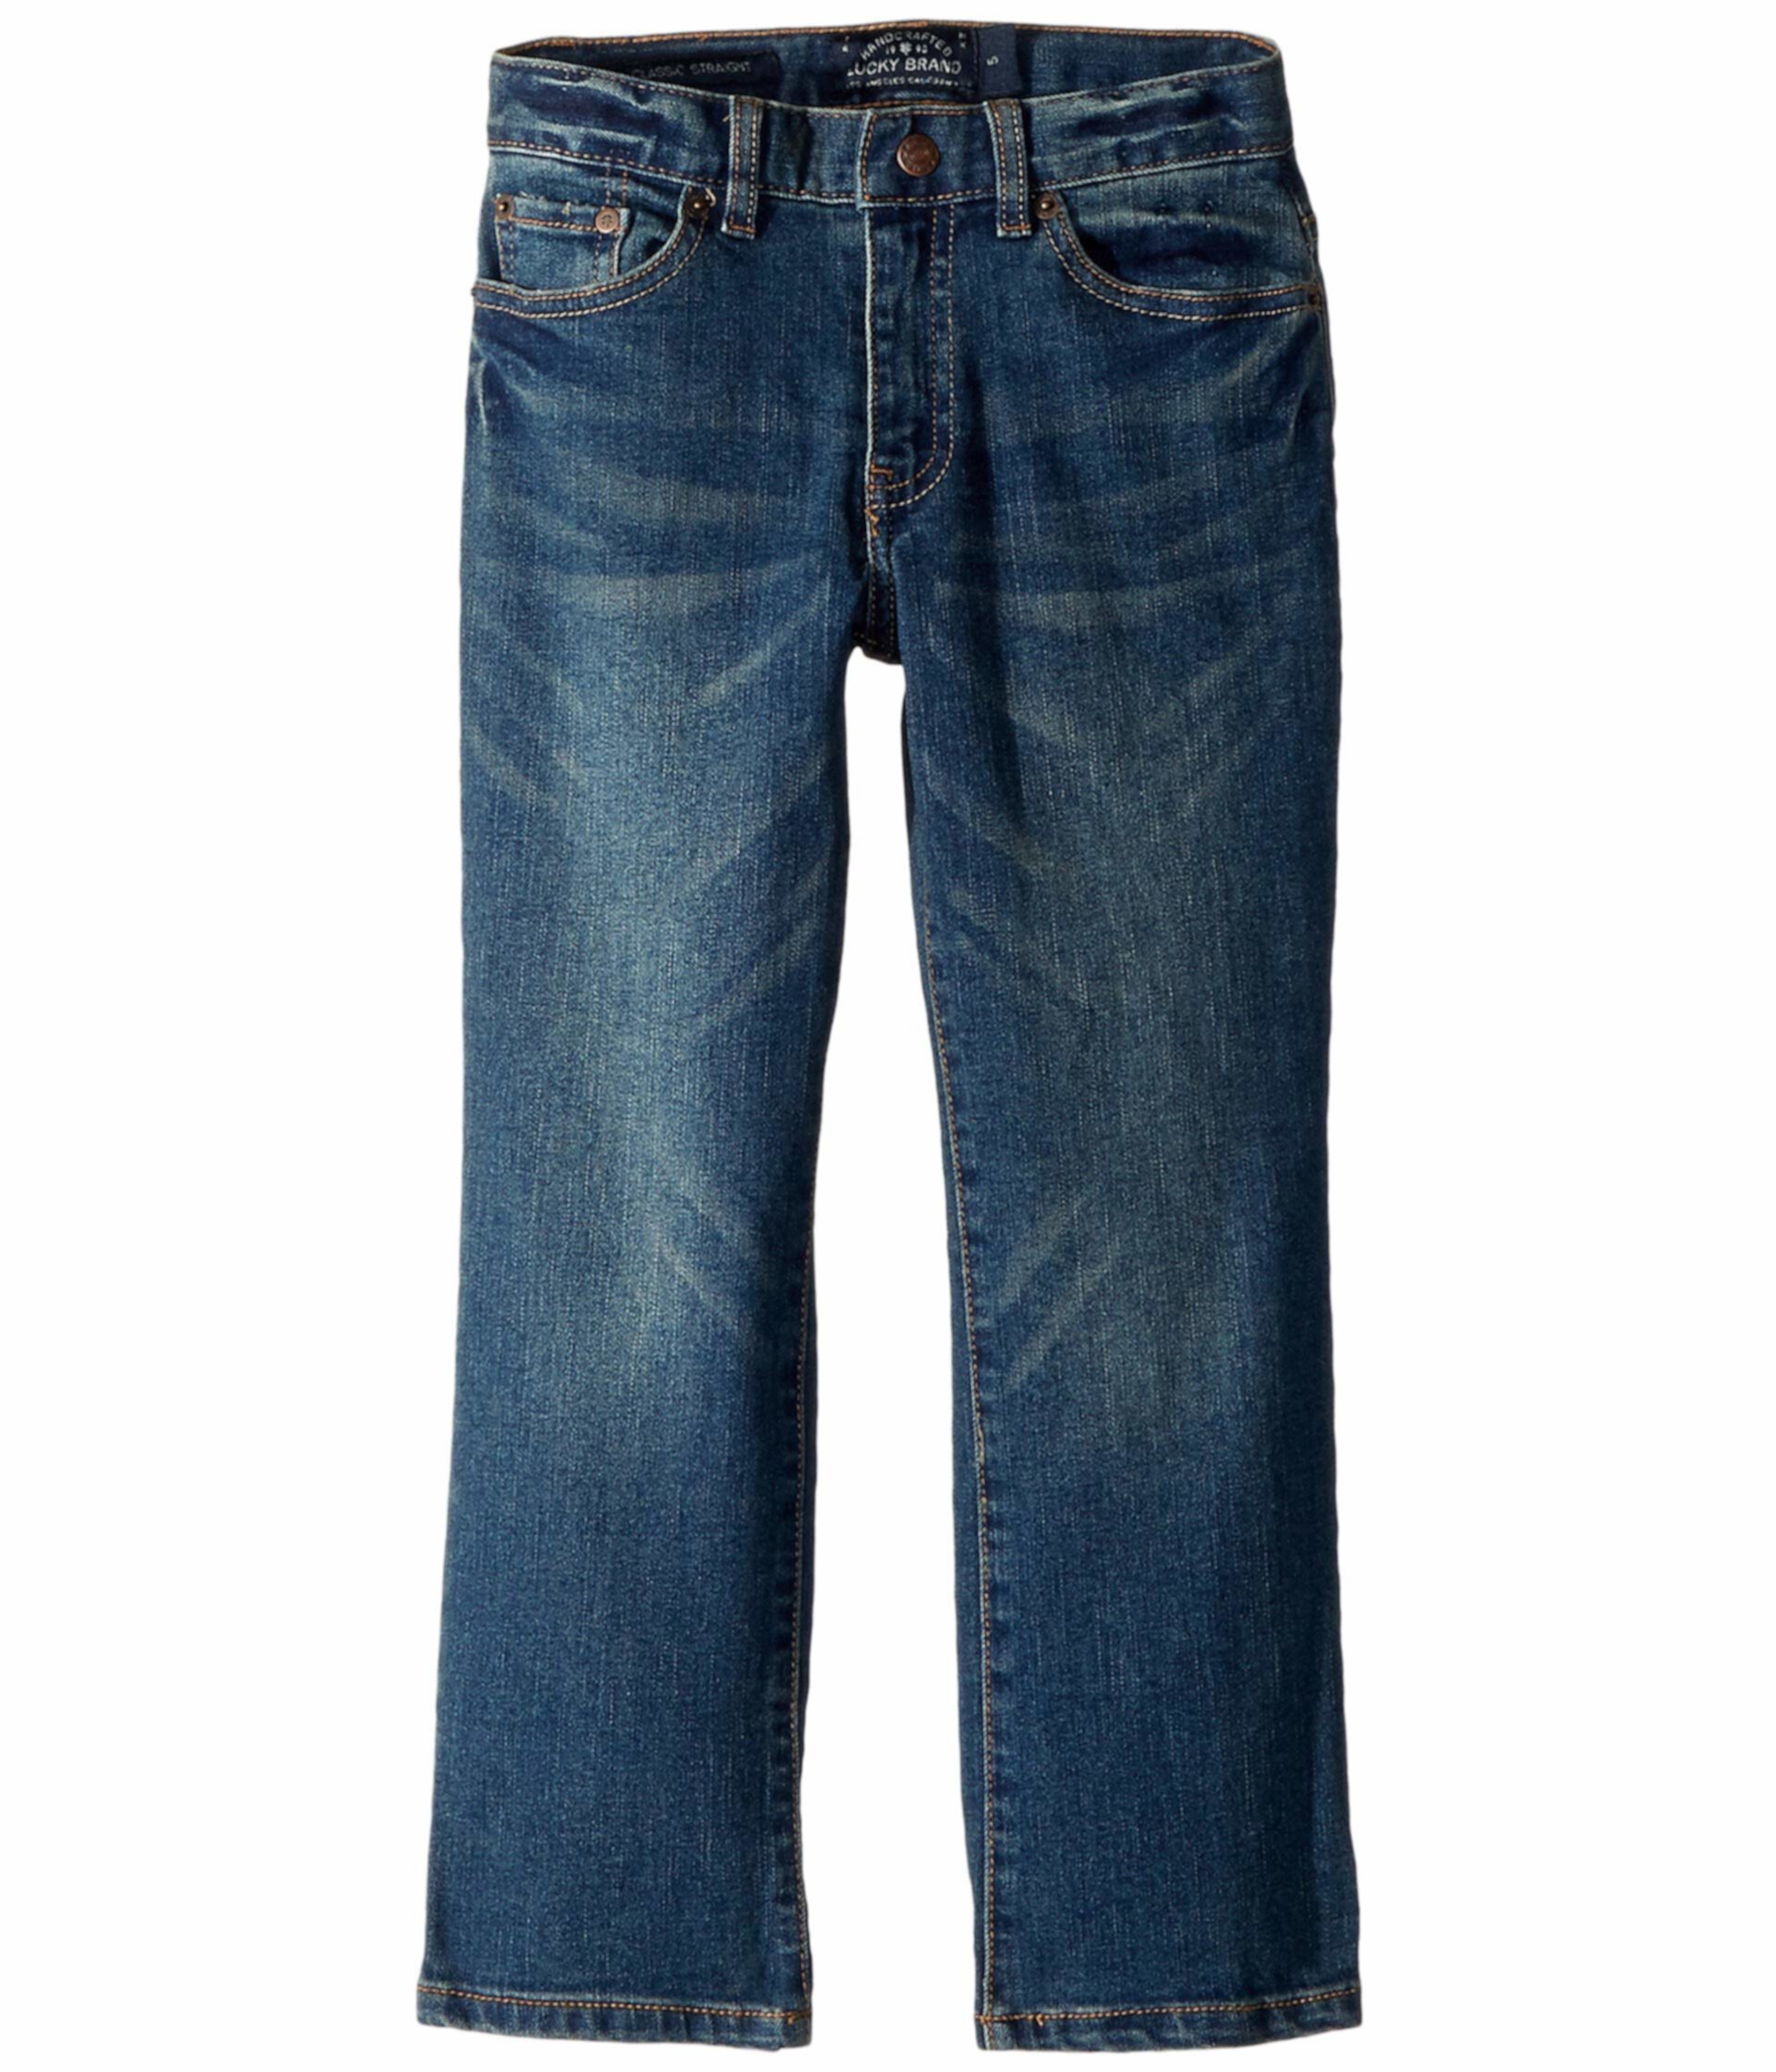 Купить Детские джинсы Базовые джинсовые штаны в Yorba Linda (Маленькие ...